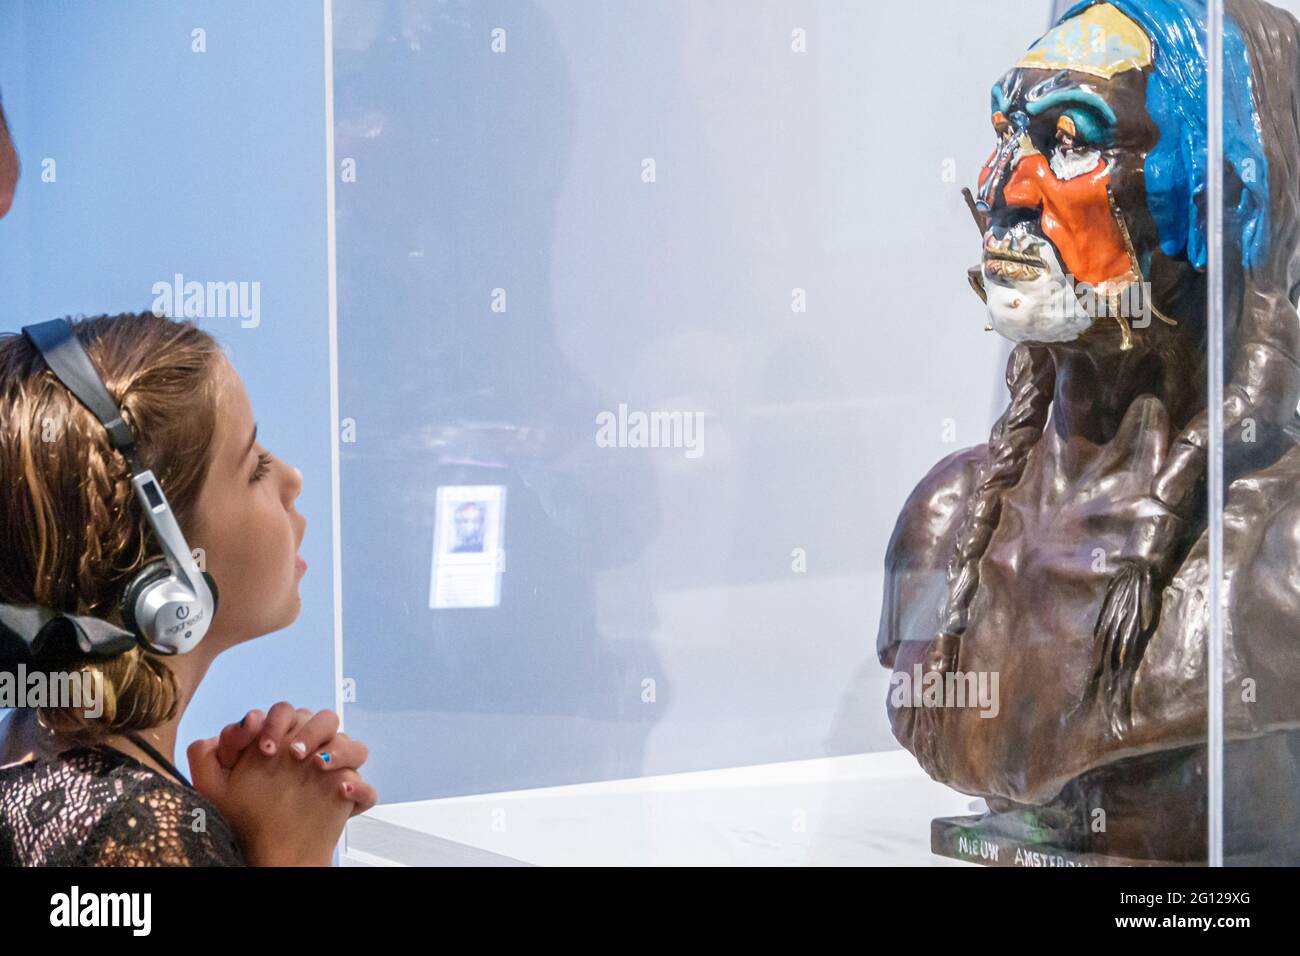 Florida St. Petersburg Salvador Dali Museum Kunstgalerie in Nieuw Amsterdam Büste des Weißen Adlers Skulptur gemalt Bronze Mann Frau Mädchen fathe Stockfoto